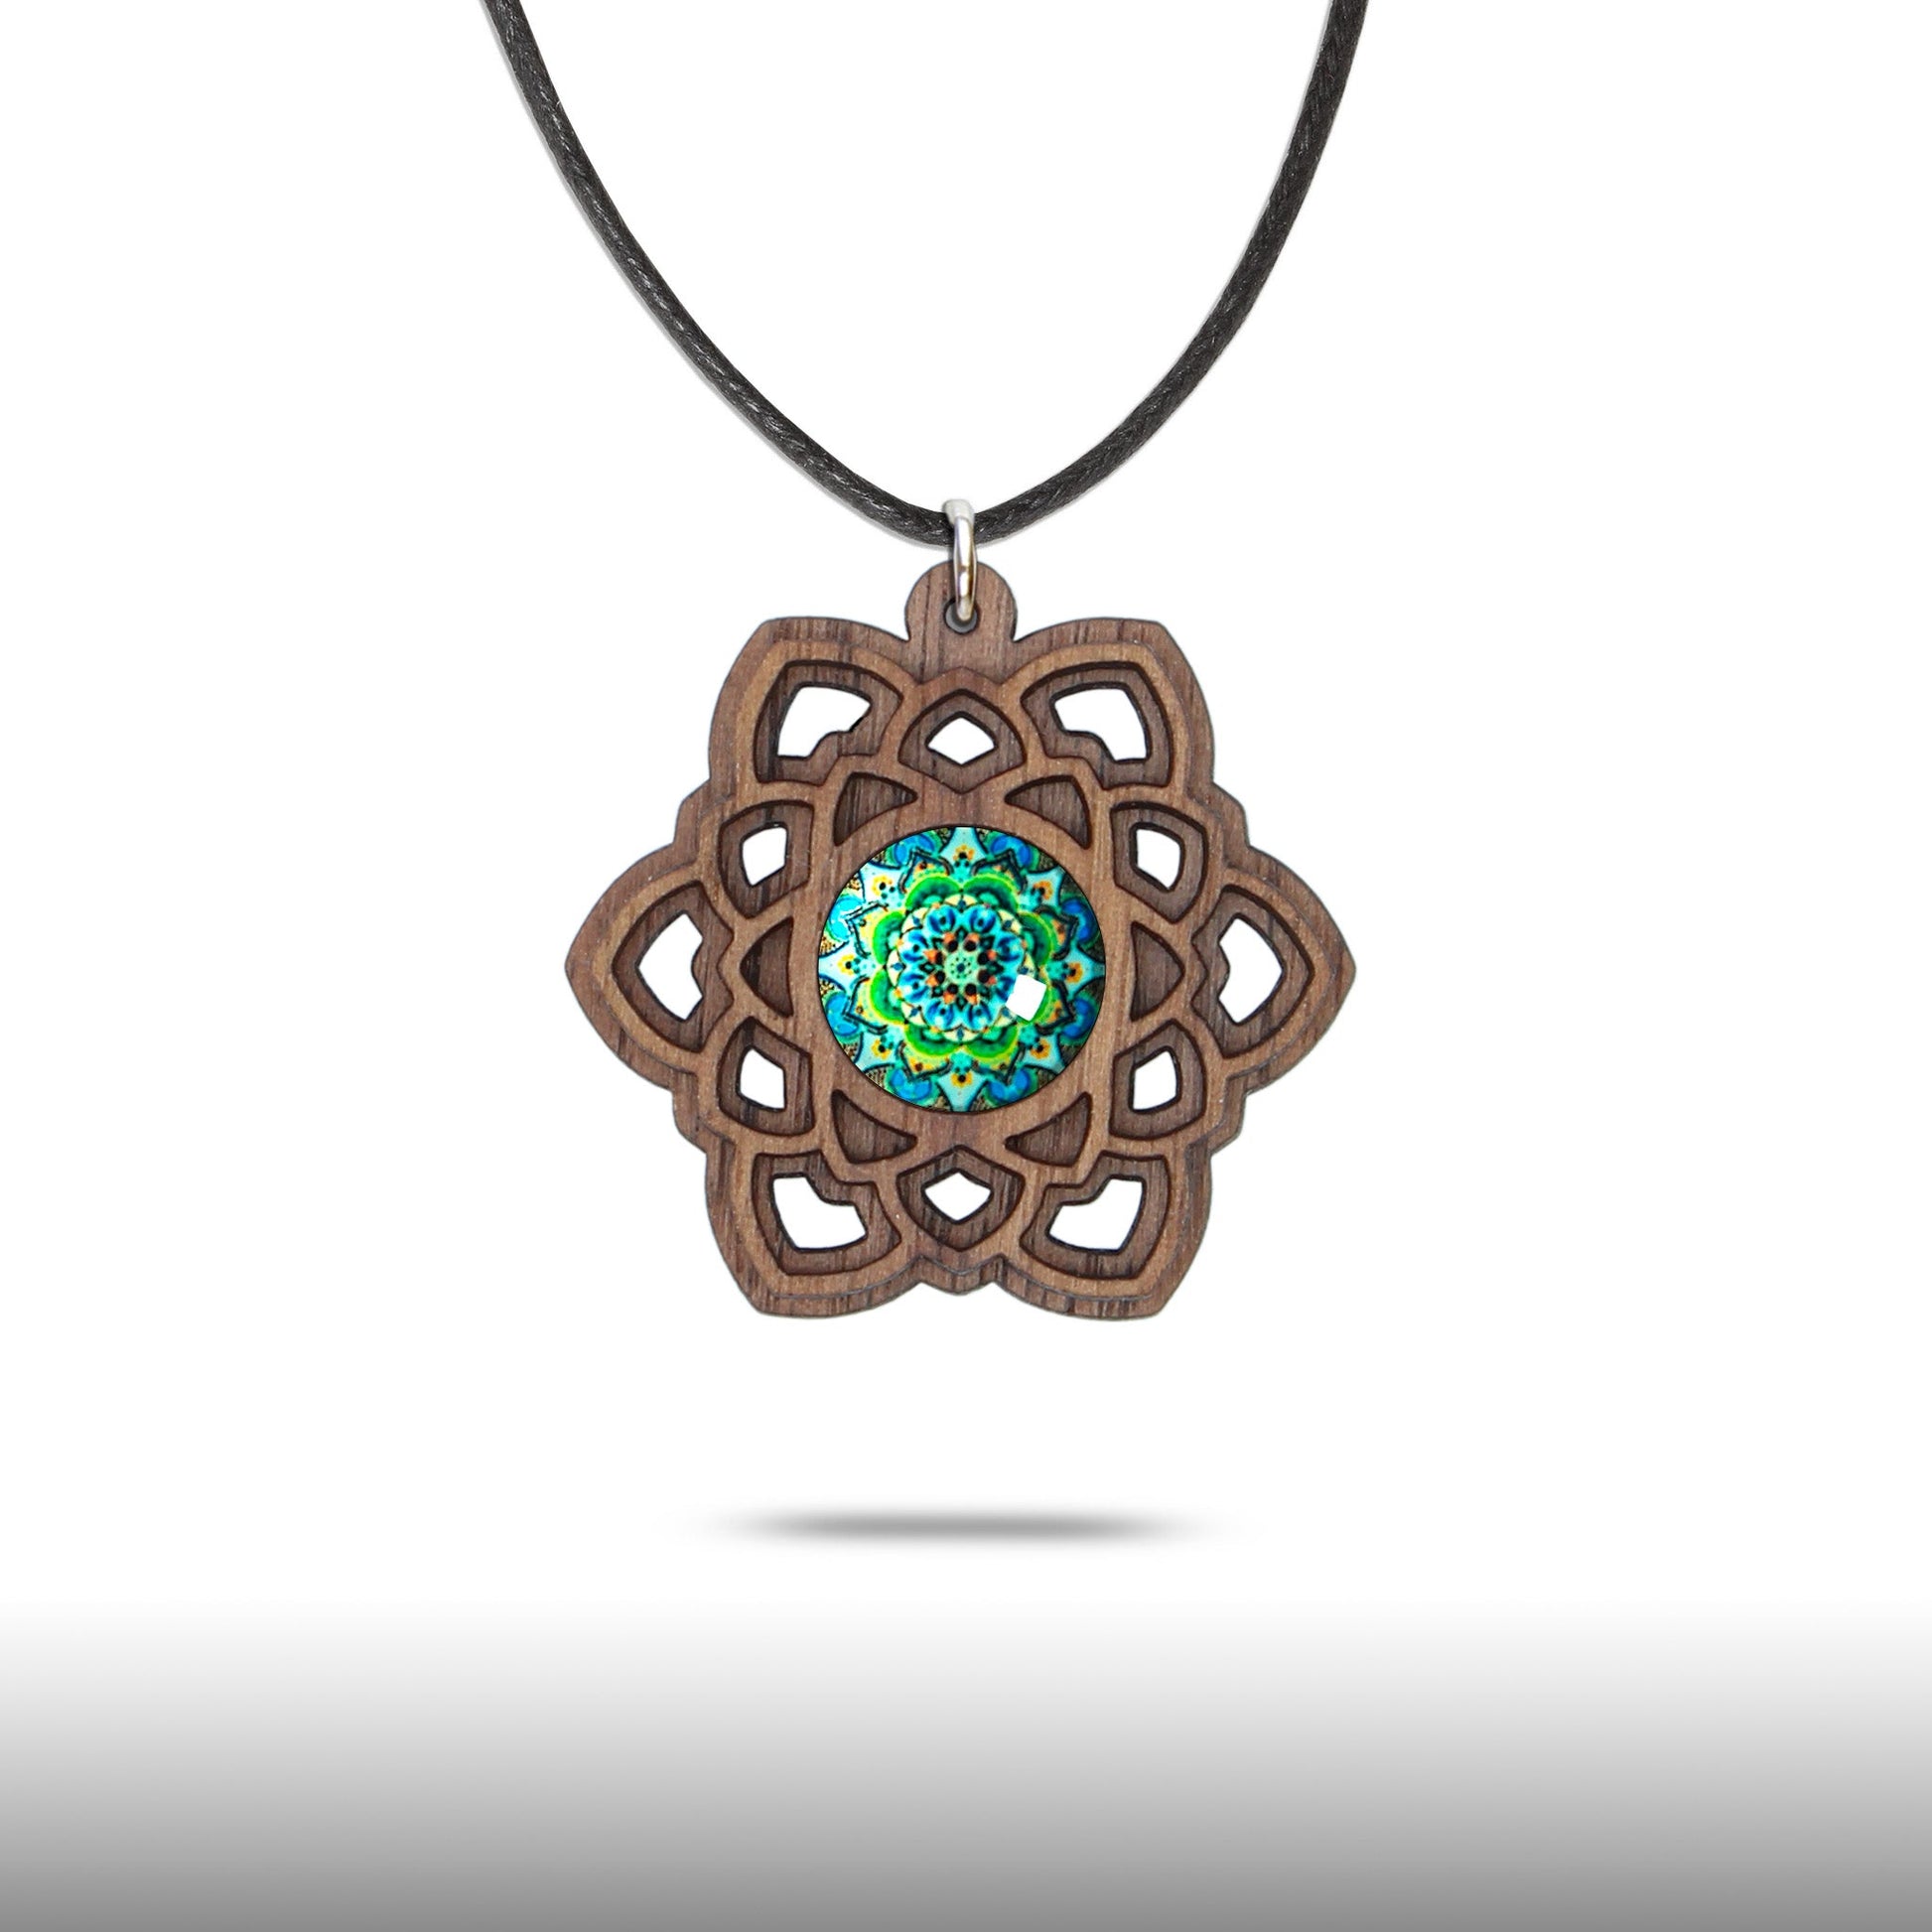 Halskette Mandala "Stern" aus Holz mit Glasstein - Nanino Design Onlineshop -